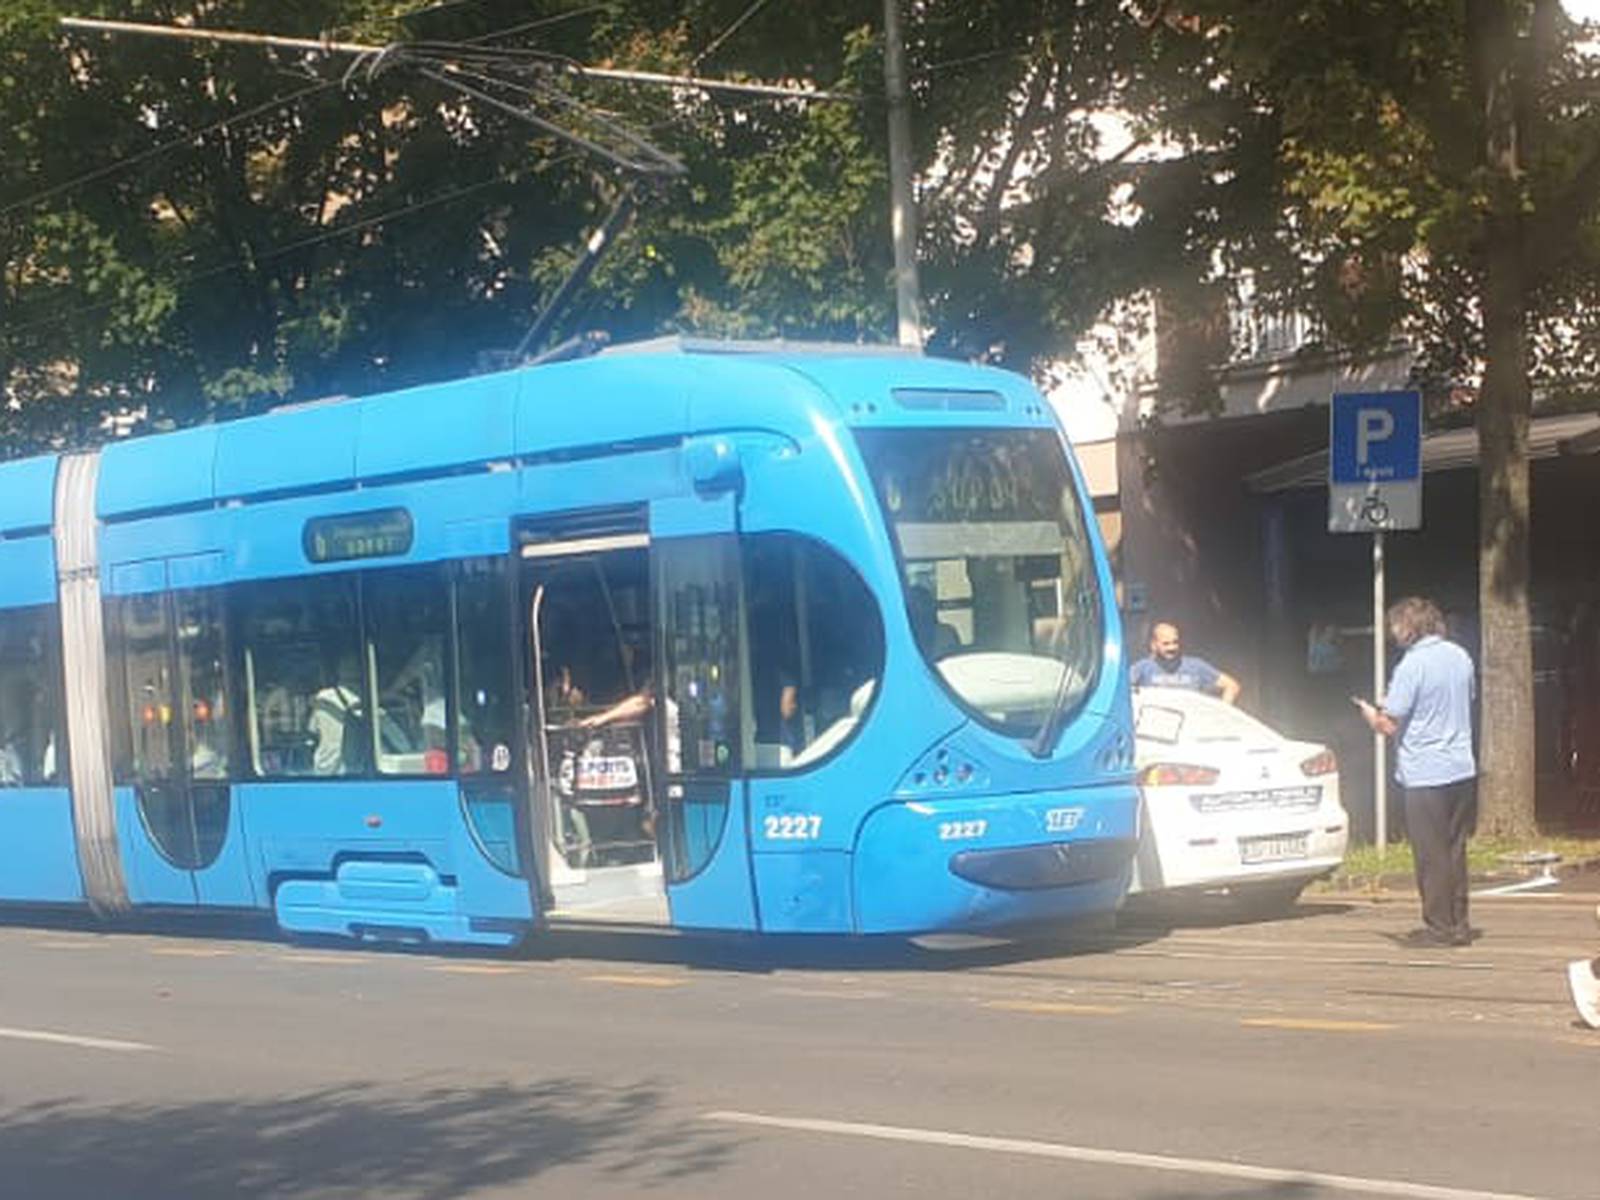 Nesreća u Zagrebu: Sudarili se taxi i tramvaj, dvoje ozlijeđeno